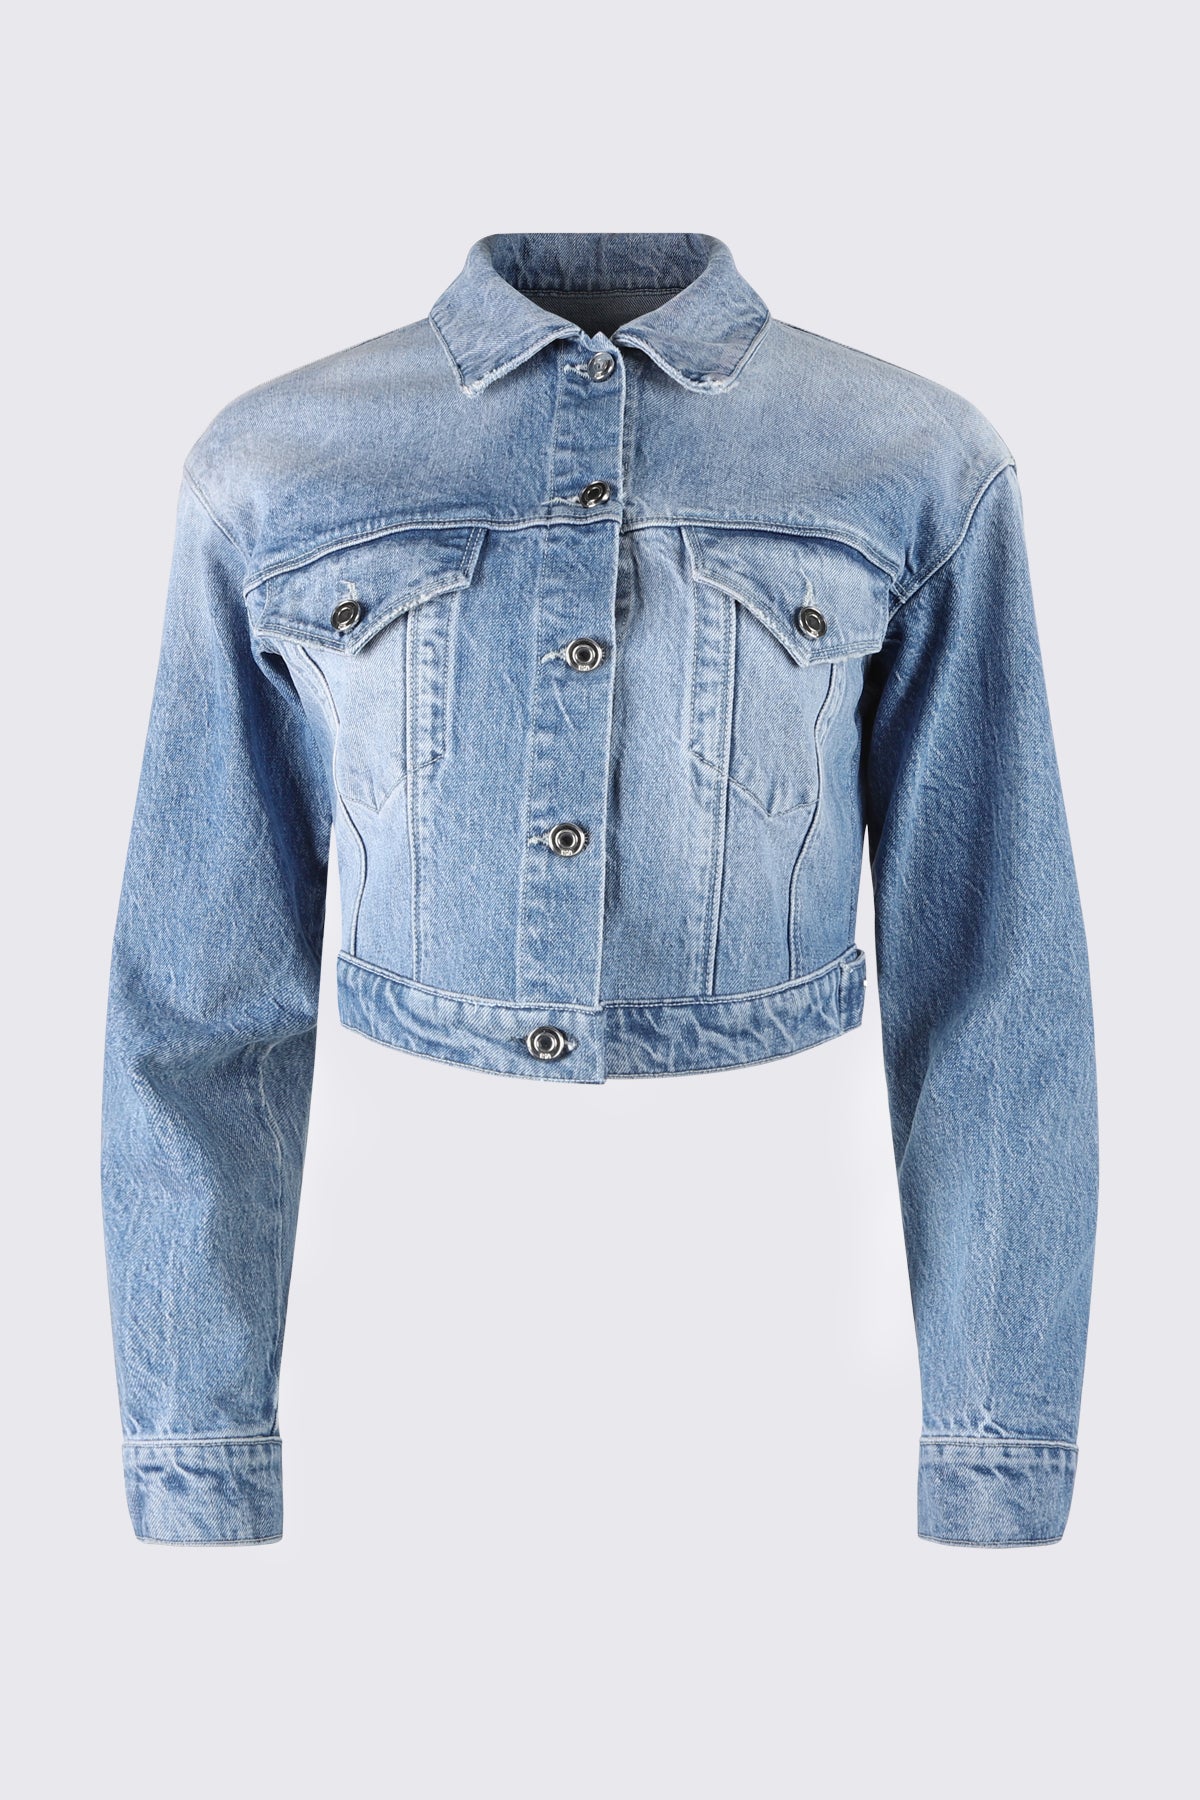 aclent/Boyfriend vintage denim jacket-